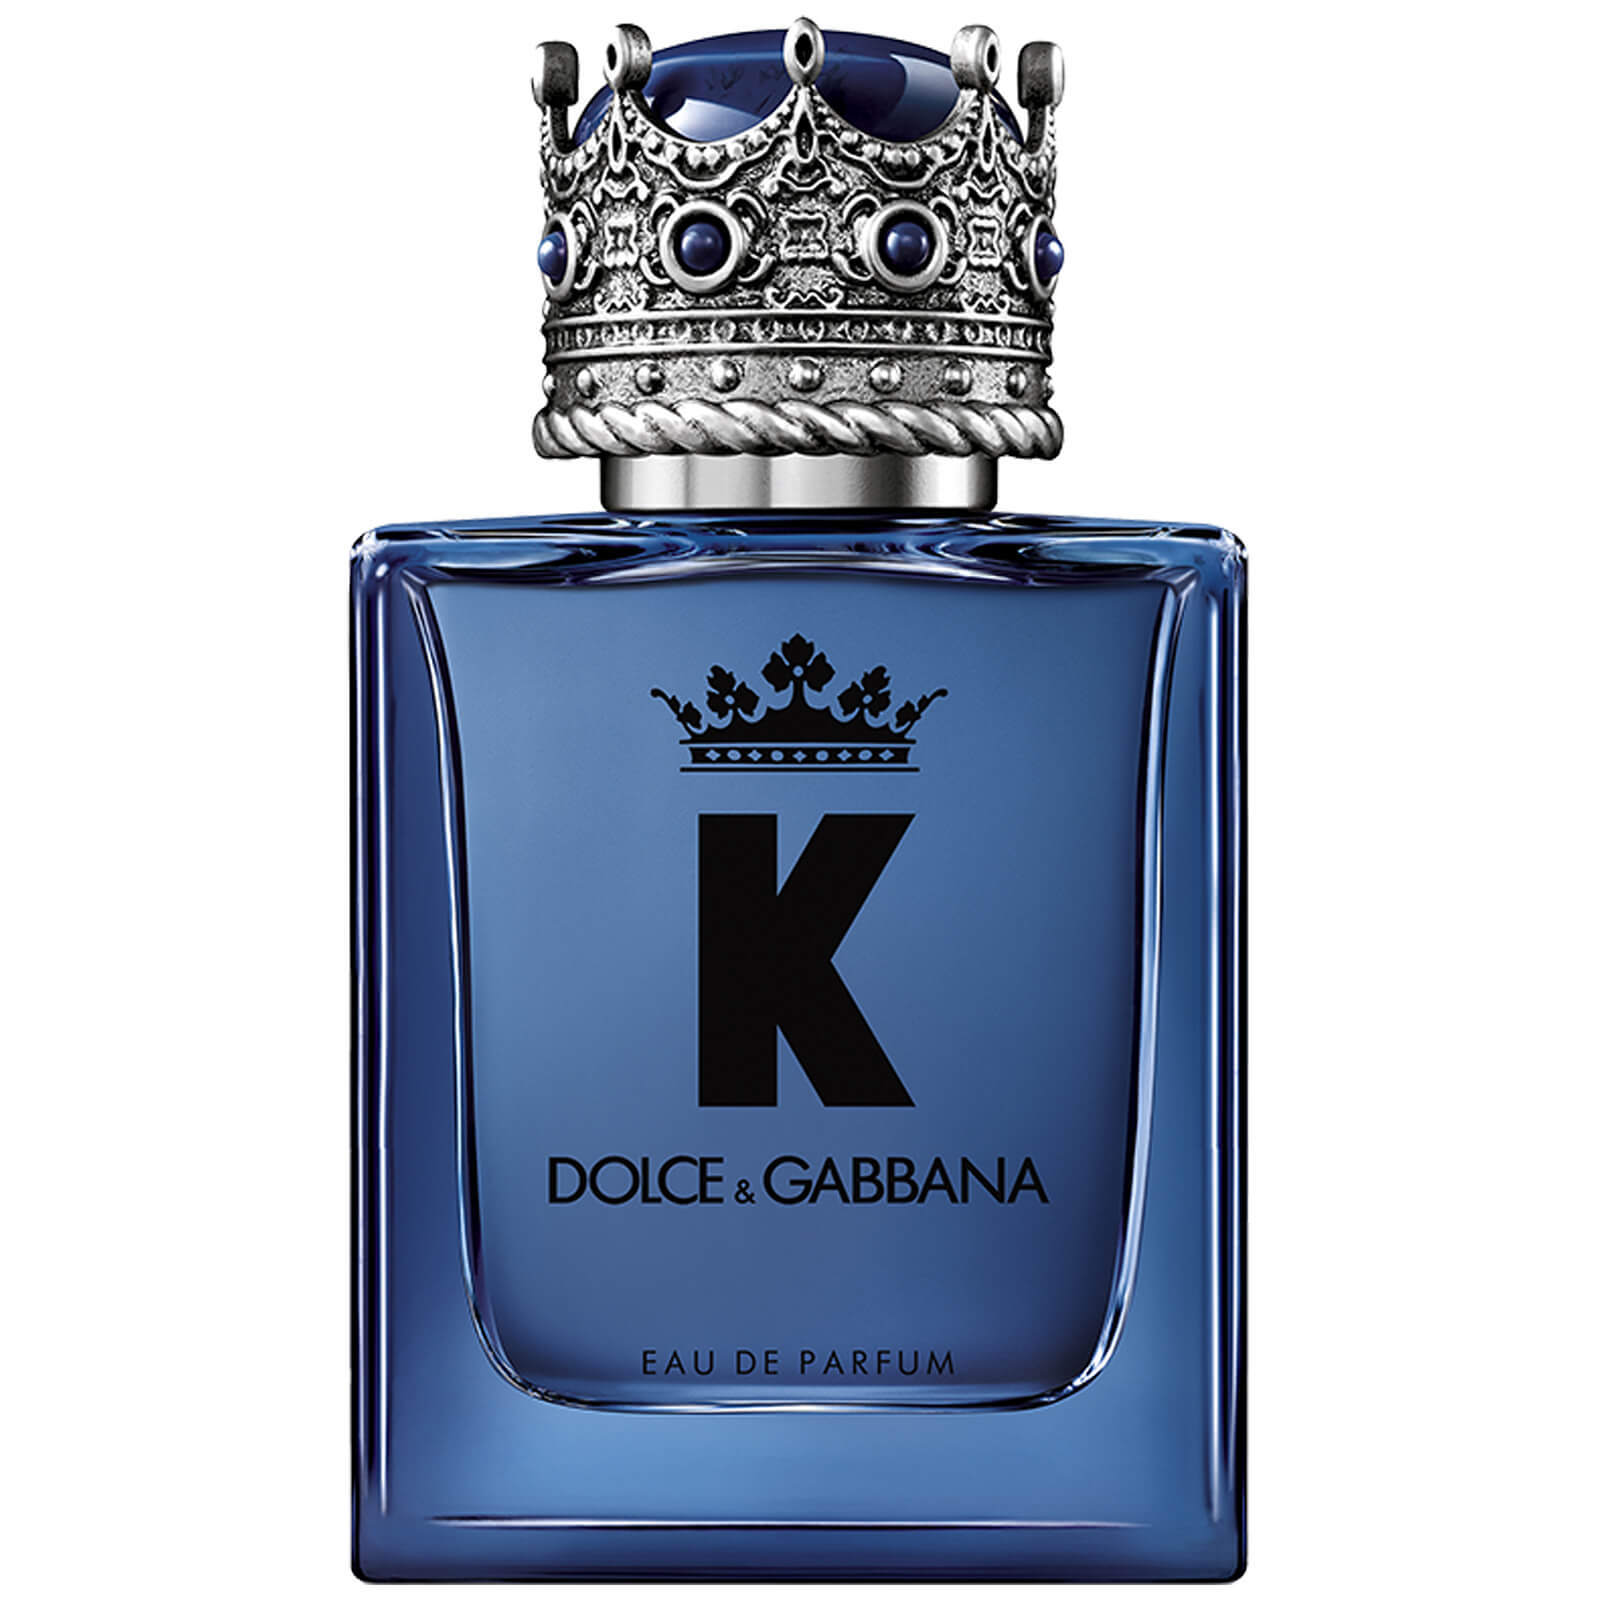 K by Dolce&Gabbana Eau de Parfum (Various Sizes) - 50ML